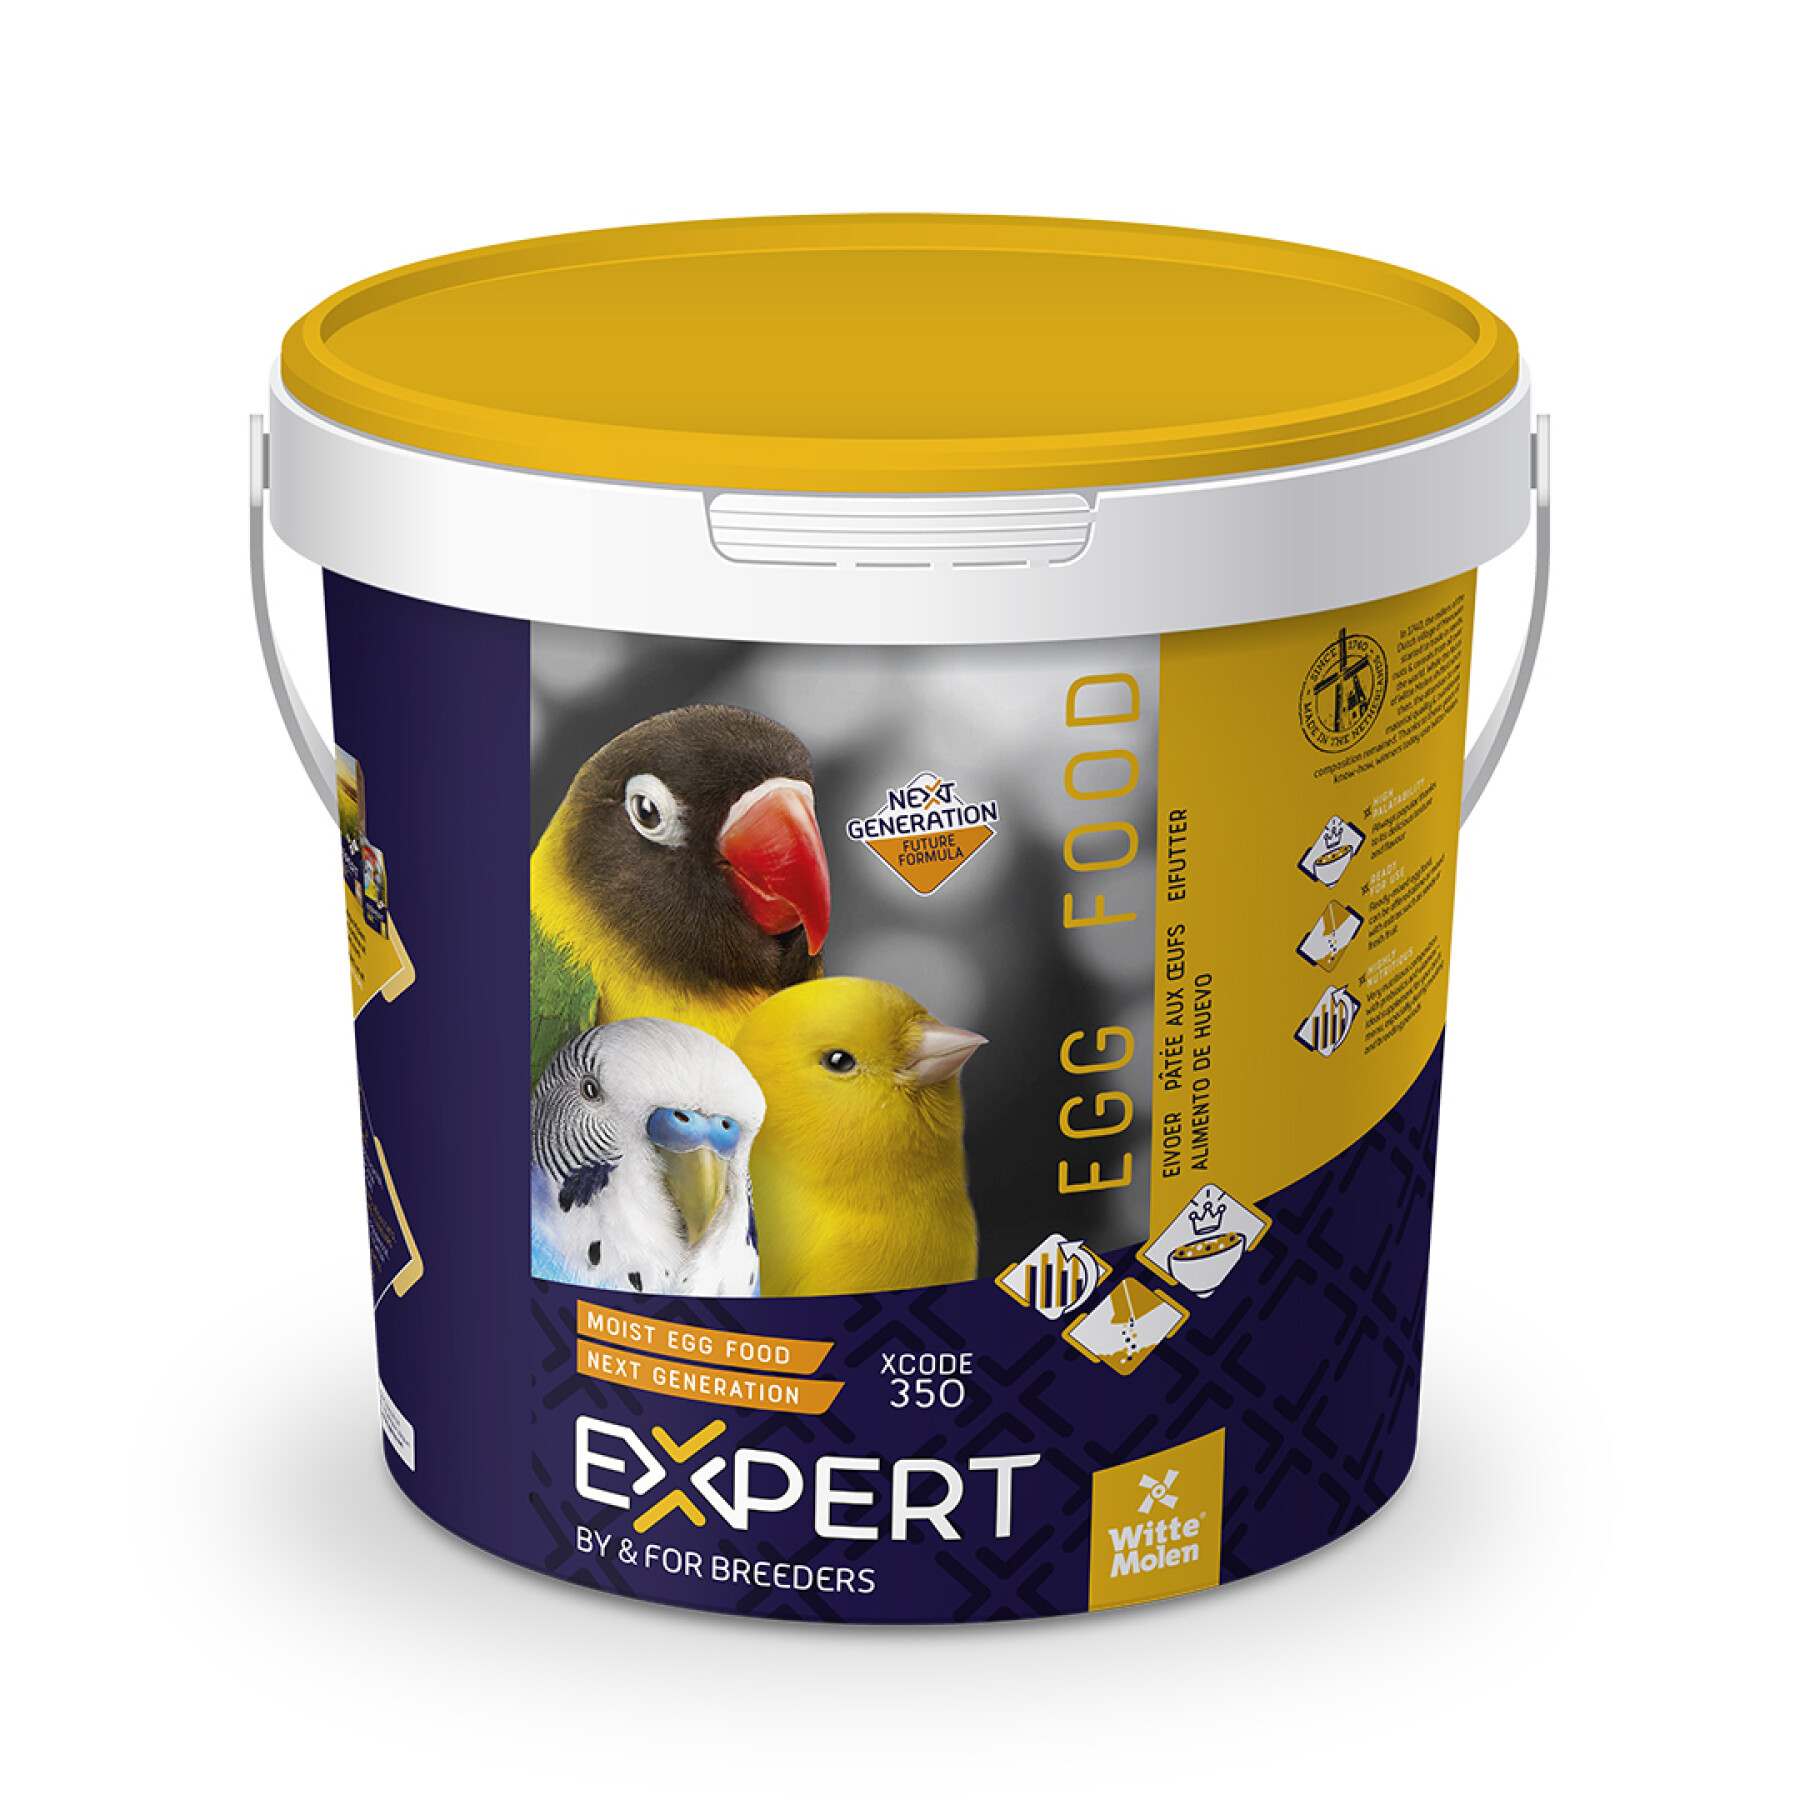 Feed supplement for birds egg pâtée next generation Witte Molen Expert